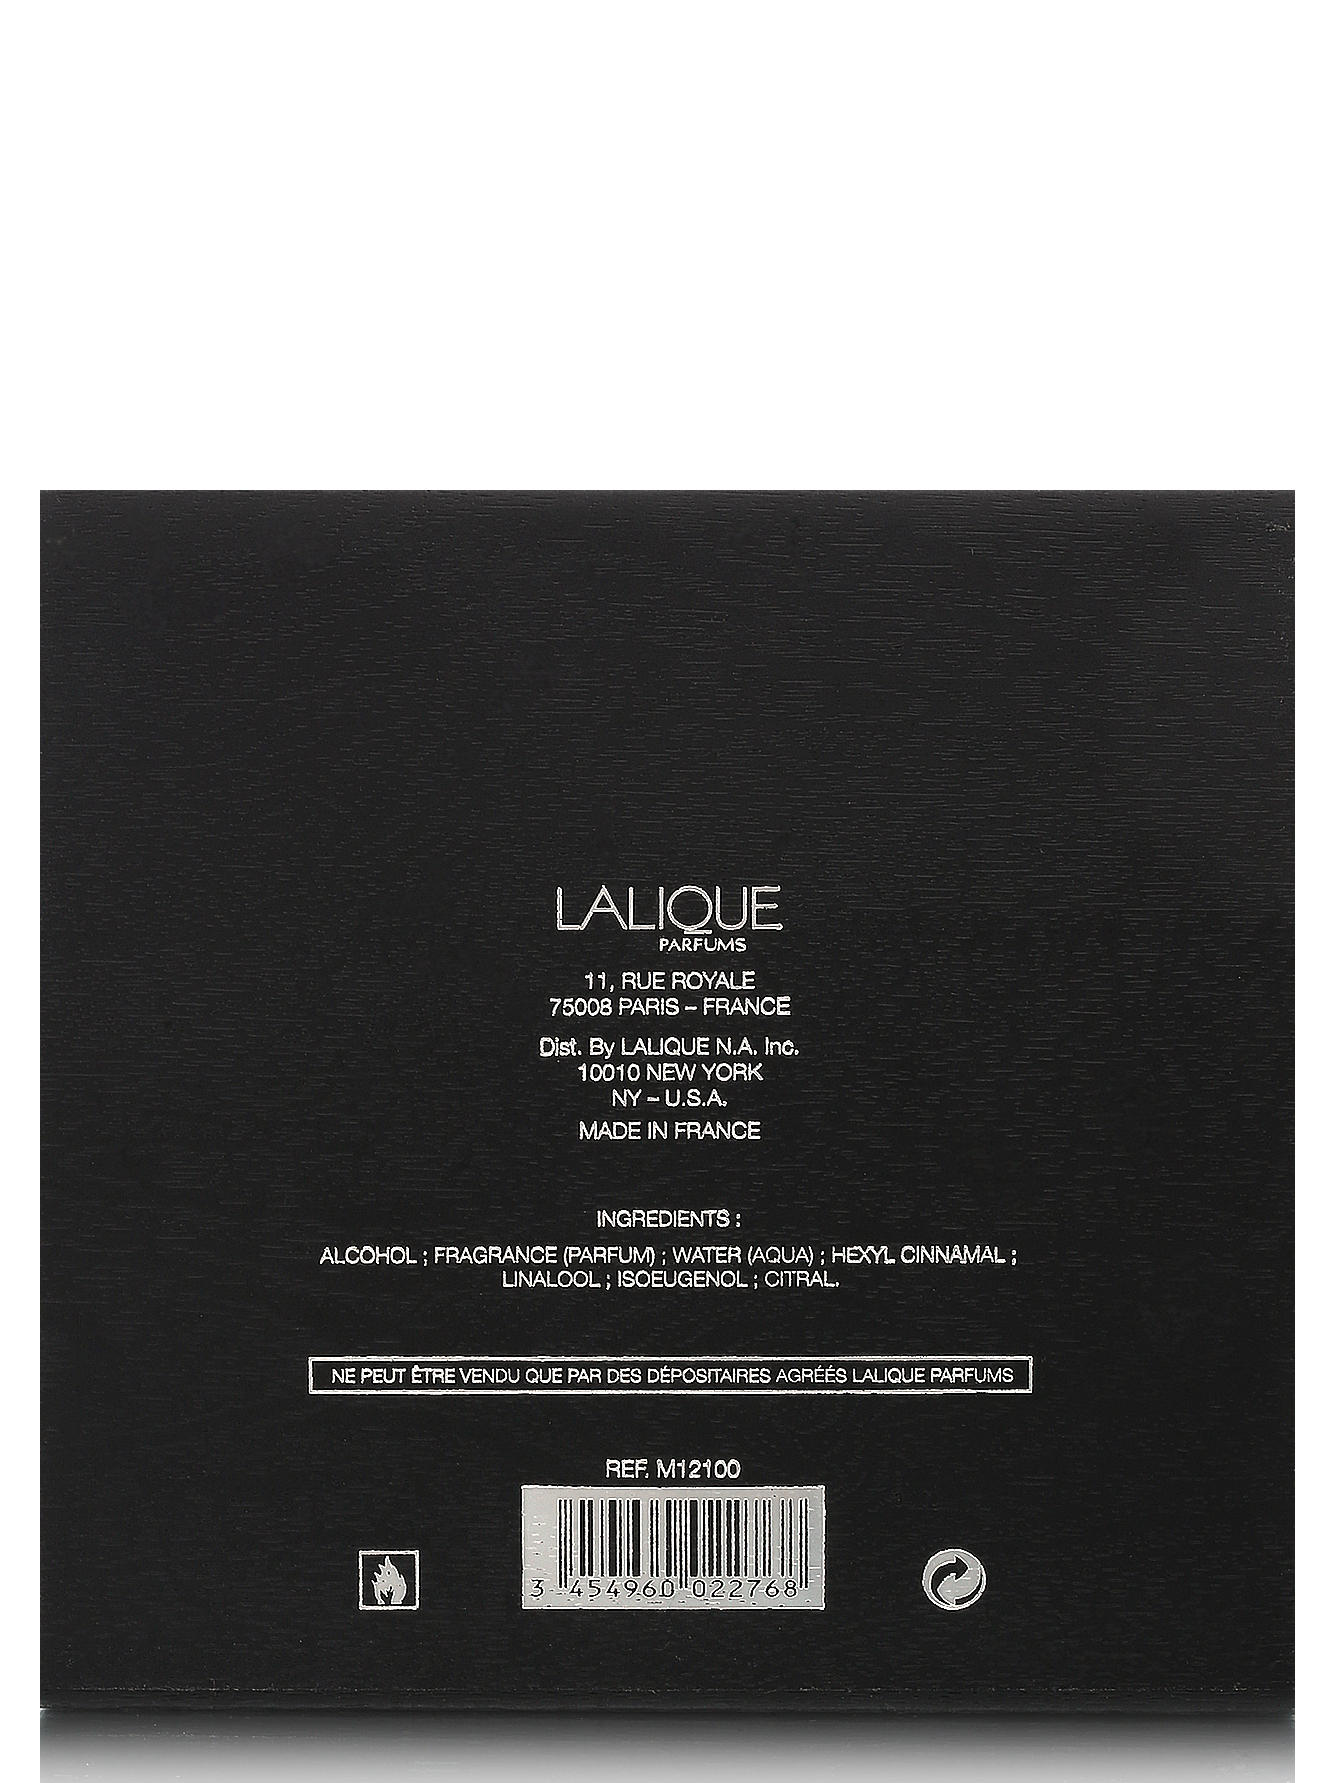  Парфюмерная вода - Lalique Encre Noire, 60ml - Модель Верх-Низ